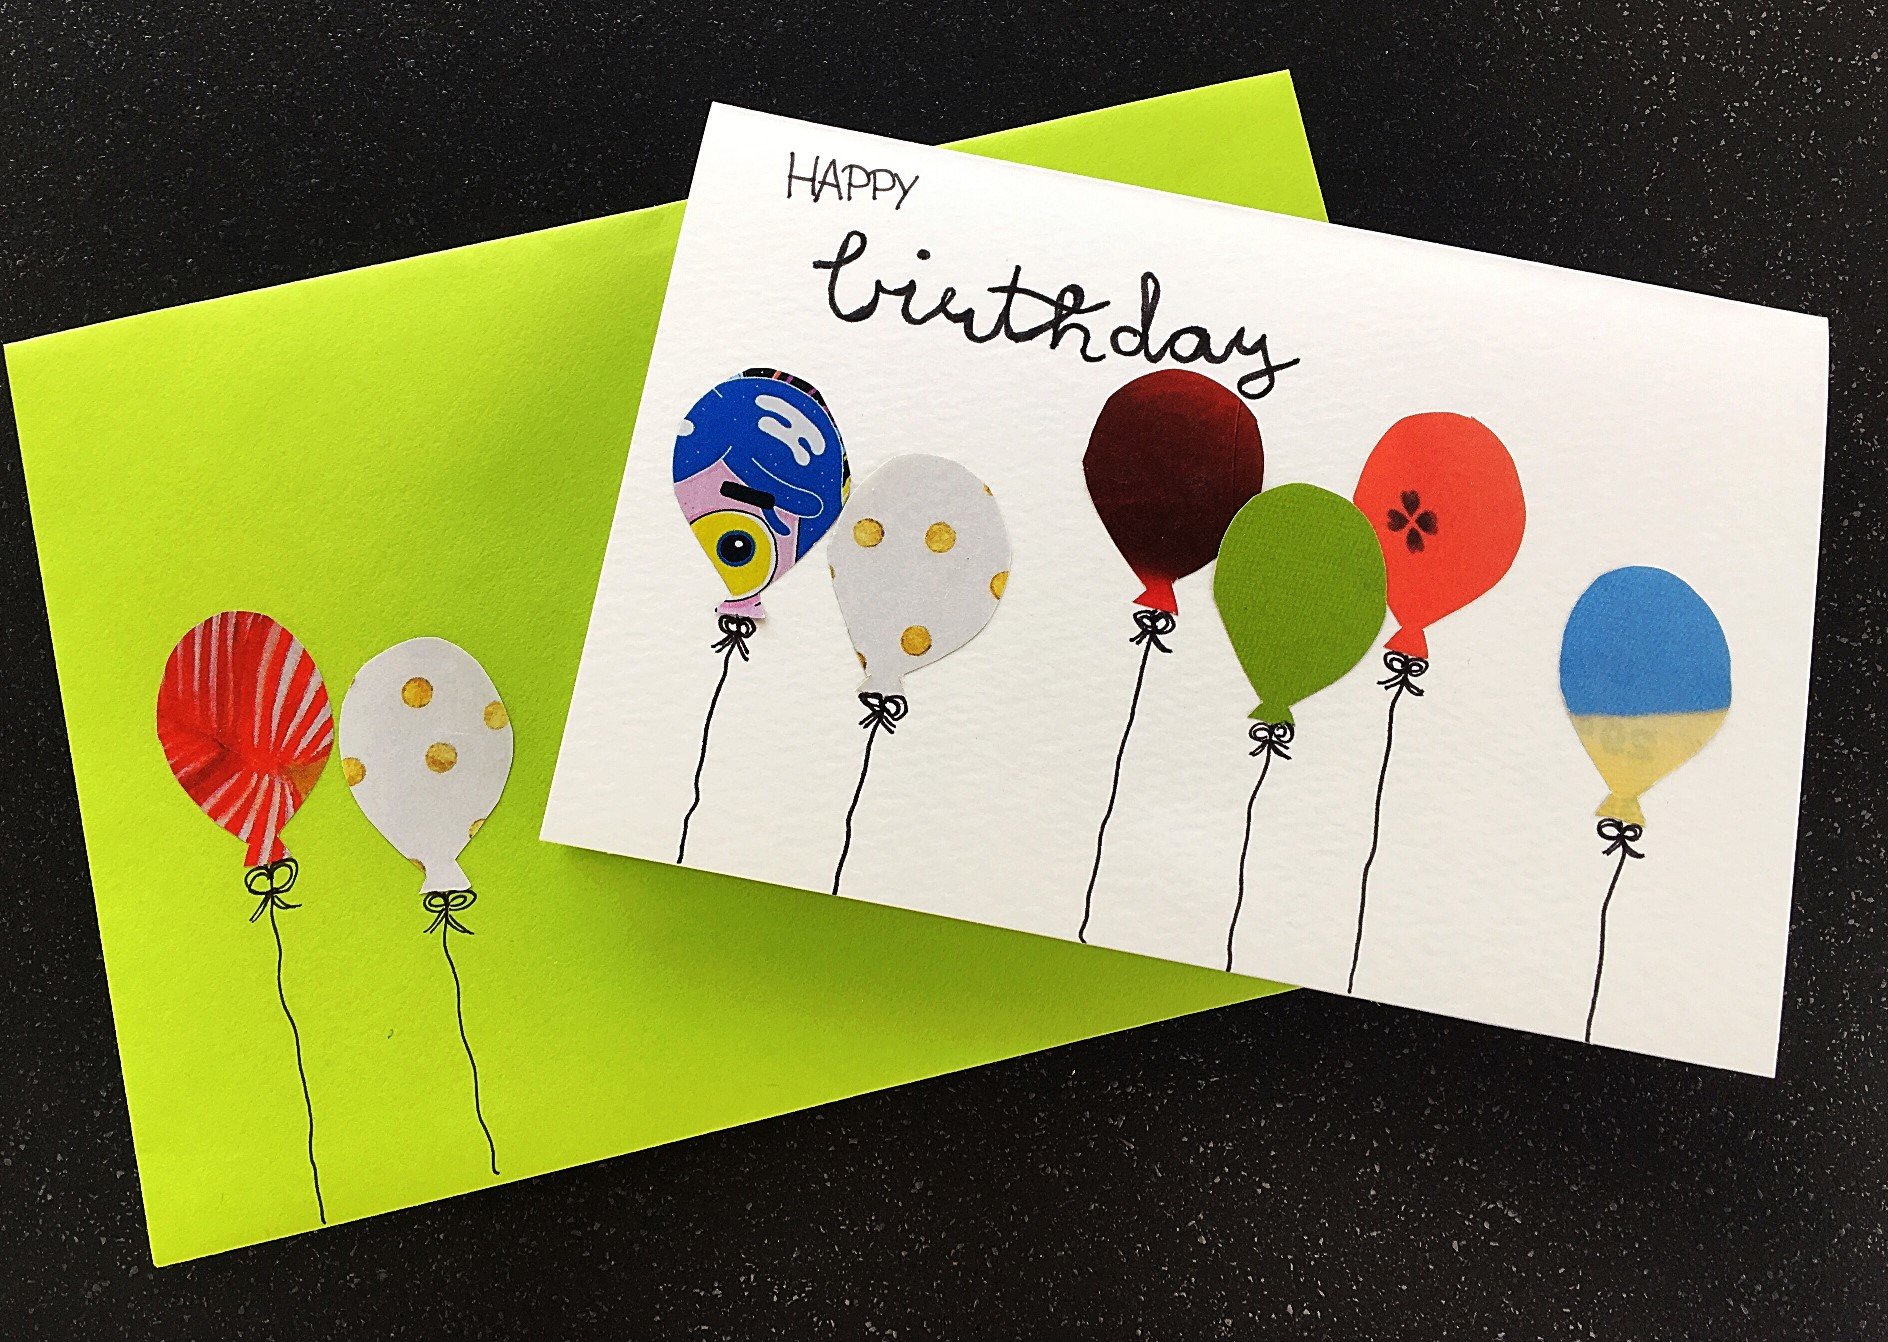 IMG 9549 - Geburtstagskarte mit Luftballons basteln